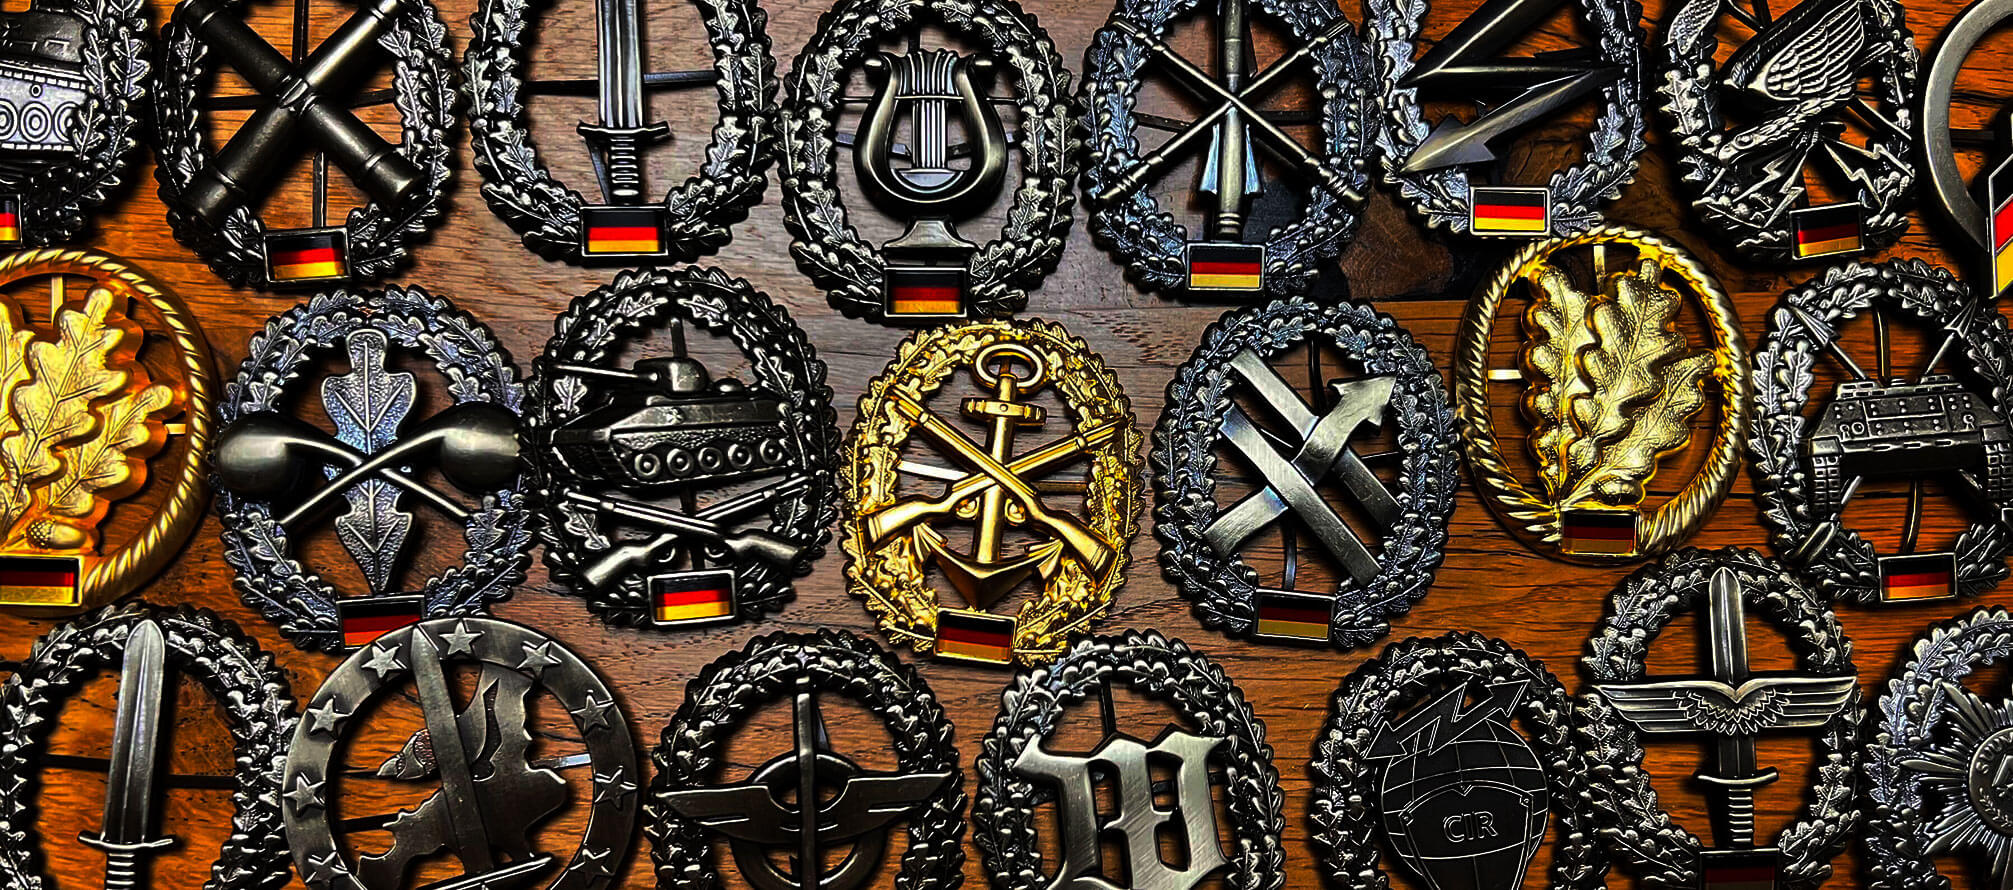 Barettabzeichen aller Truppen der Bundeswehr